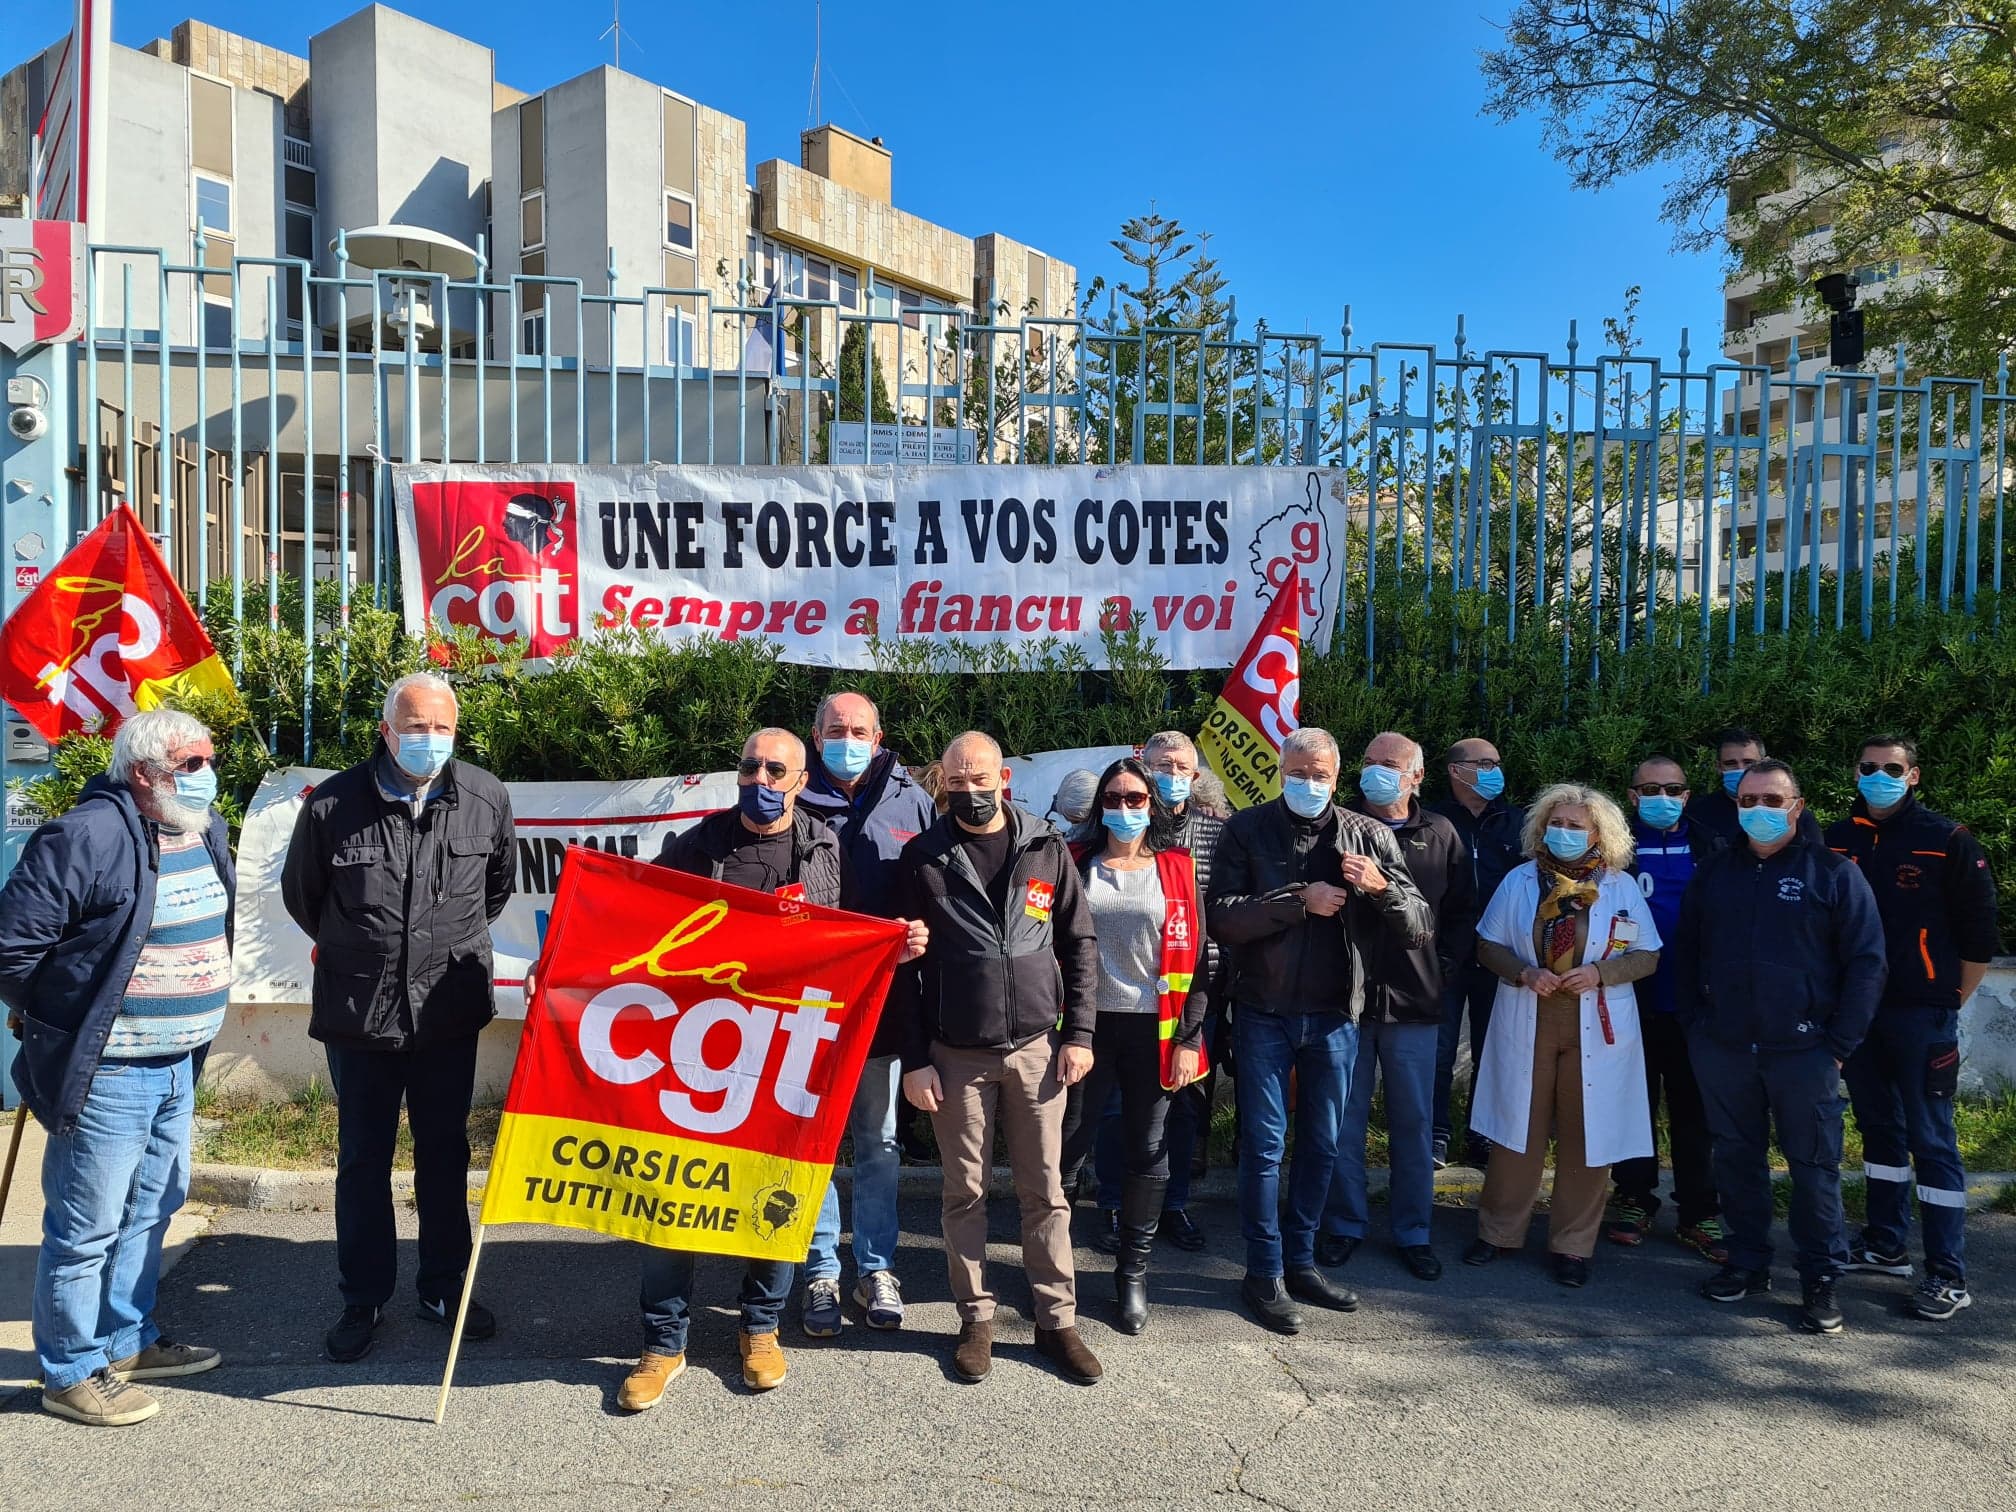 Le rassemblement de la CGT ce jeudi 8 avril 2021 faisait écho aux manifestations dans d'autres villes de l'Hexagone. Crédits Photo : Pierre-Manuel Pescetti